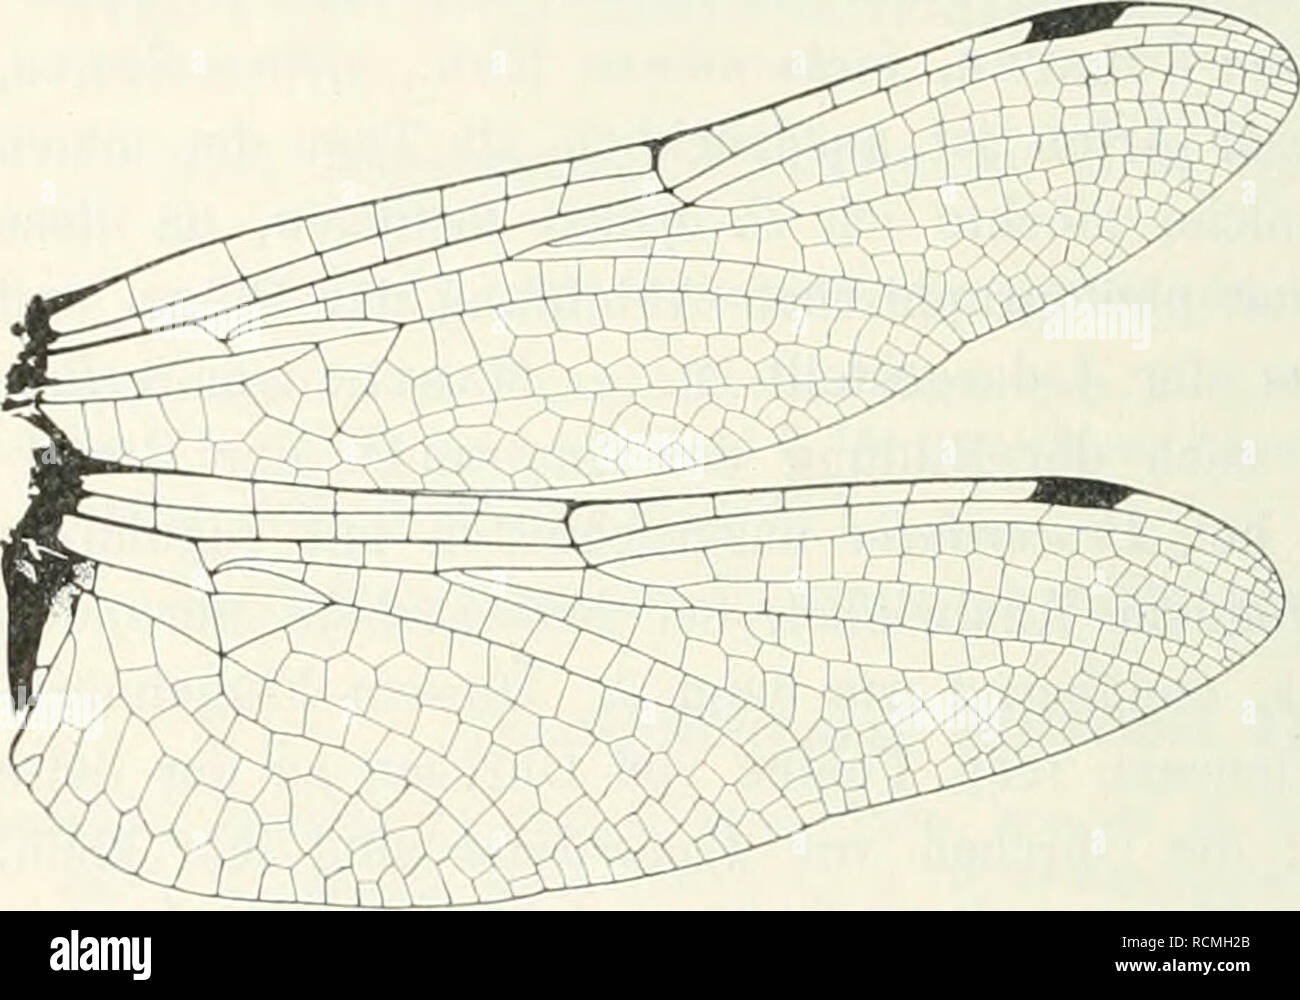 . Die Fauna Südwest-Australiens; Ergebnisse, hrsg. von W. Michaelsen und R. Hartmeyer. Zoology. 438 F. Ris, 21. Procoi'dulia jacksoniensls (Rambur). Gordulia jacksoniensls Rambde, N6vr. p. 147 (1842) (J Neu-Holland). — Selys, Synops. Cordul., p. 26 (1871) (N. S. Wales, West-Australien). Somatochlora jacksoniensis Selys, 2. Add. Synops. Cordul., p. 27 (1878). — Kirby, Cat. p. 47 (1890). — Martin, Möm. Soc. zool. France, 1901, p. 225 (Victoria). Proem-dulia jacksoniensis Martin, Coli. Selys, Cordul., p. 16 (1906) (West-Australien, Victoria, N. S. Wales). In KoU. Michaelsen-Hartmeyer nicht vertre Stock Photo